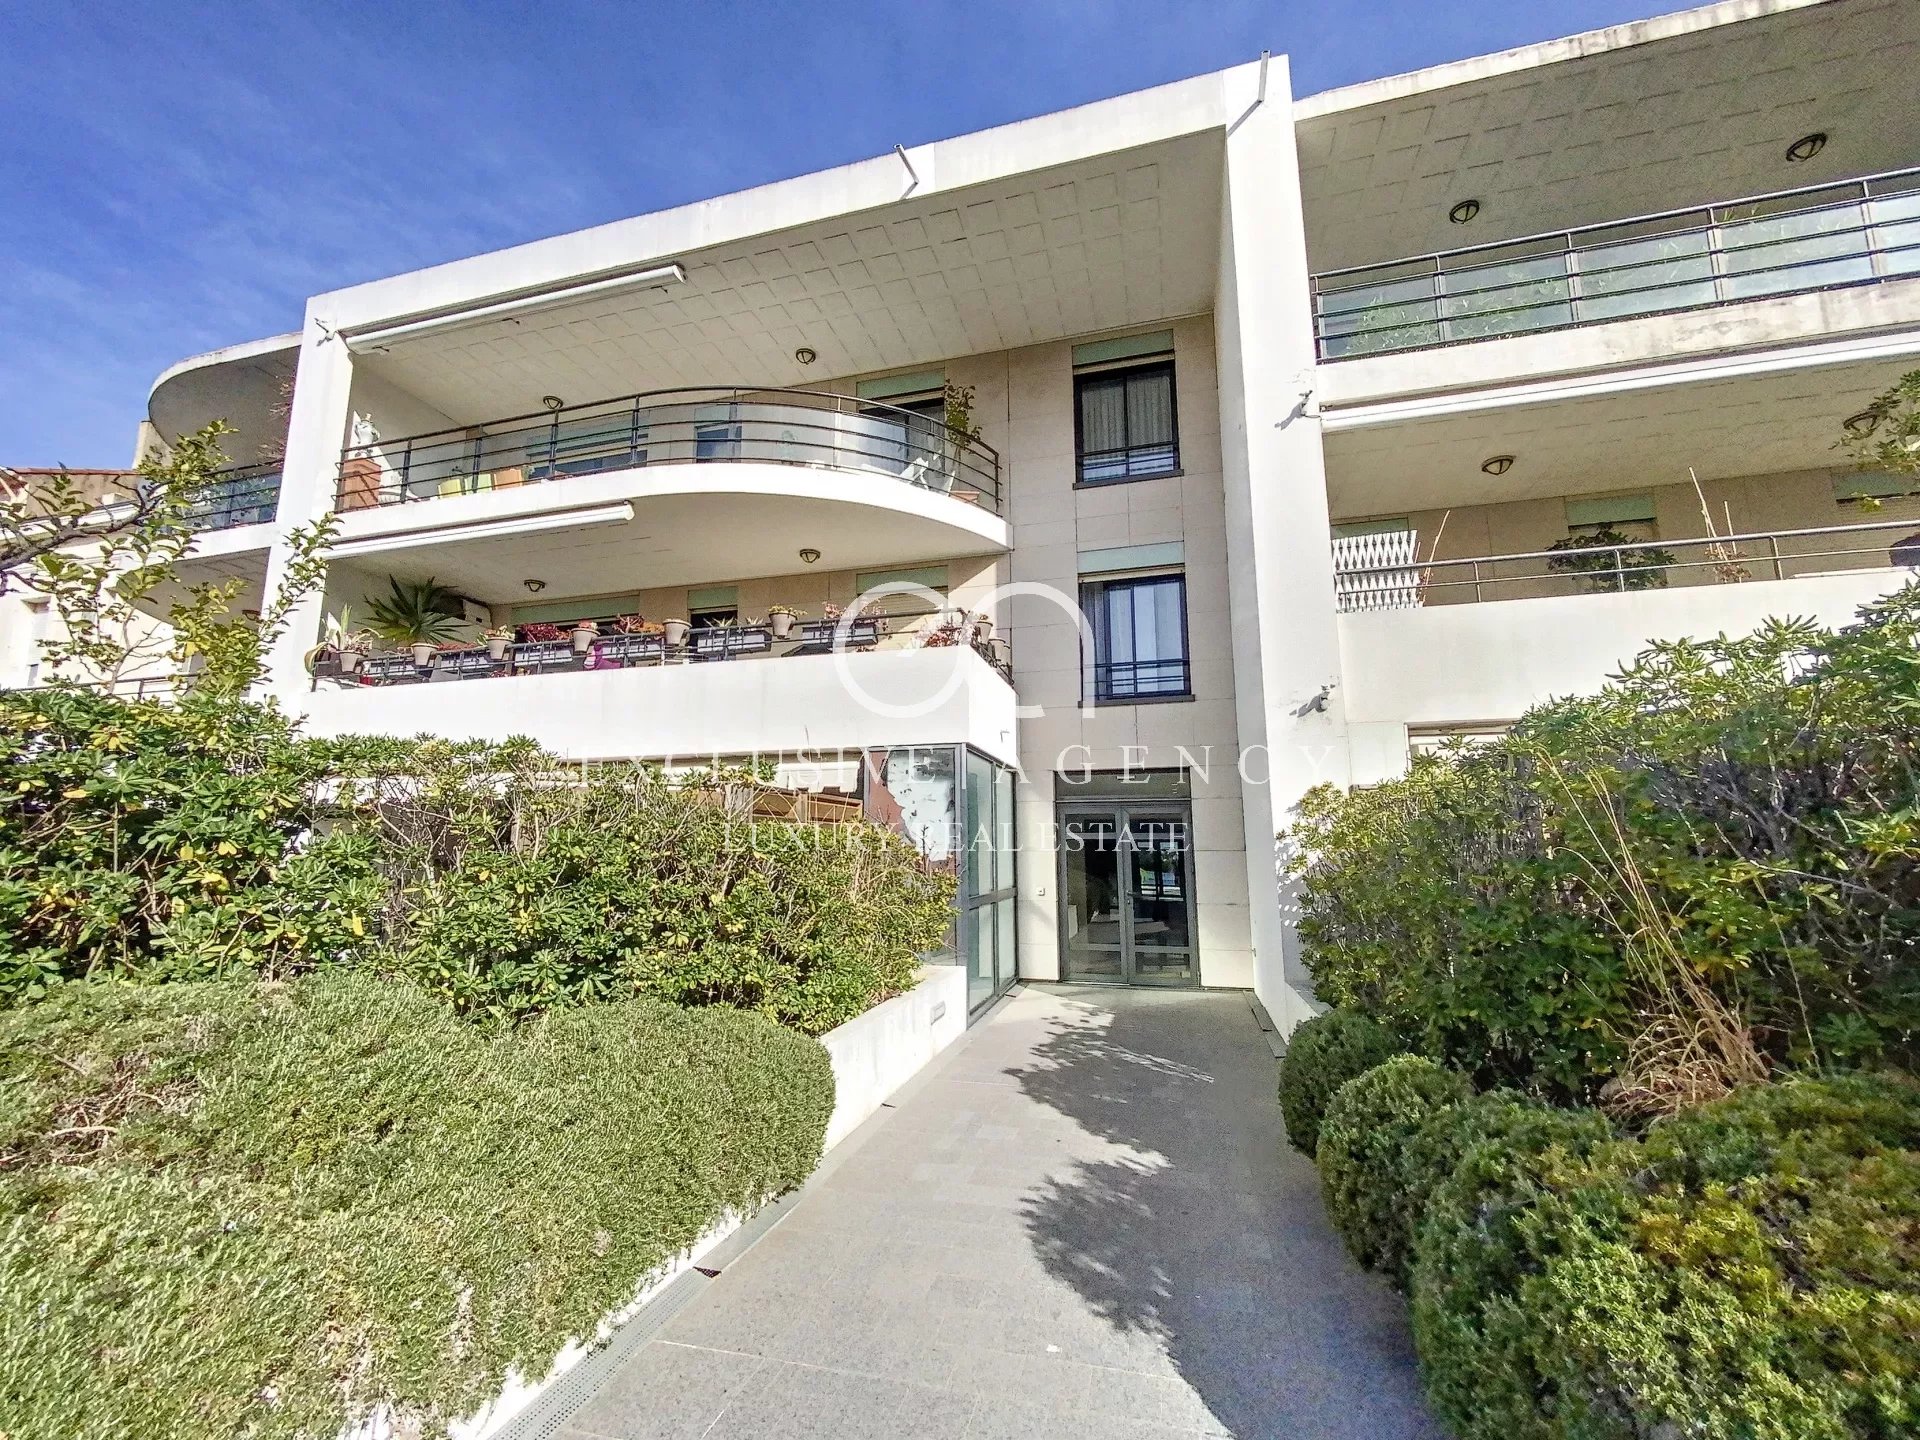 Seizoenverhuur Appartement - Cannes Croisette